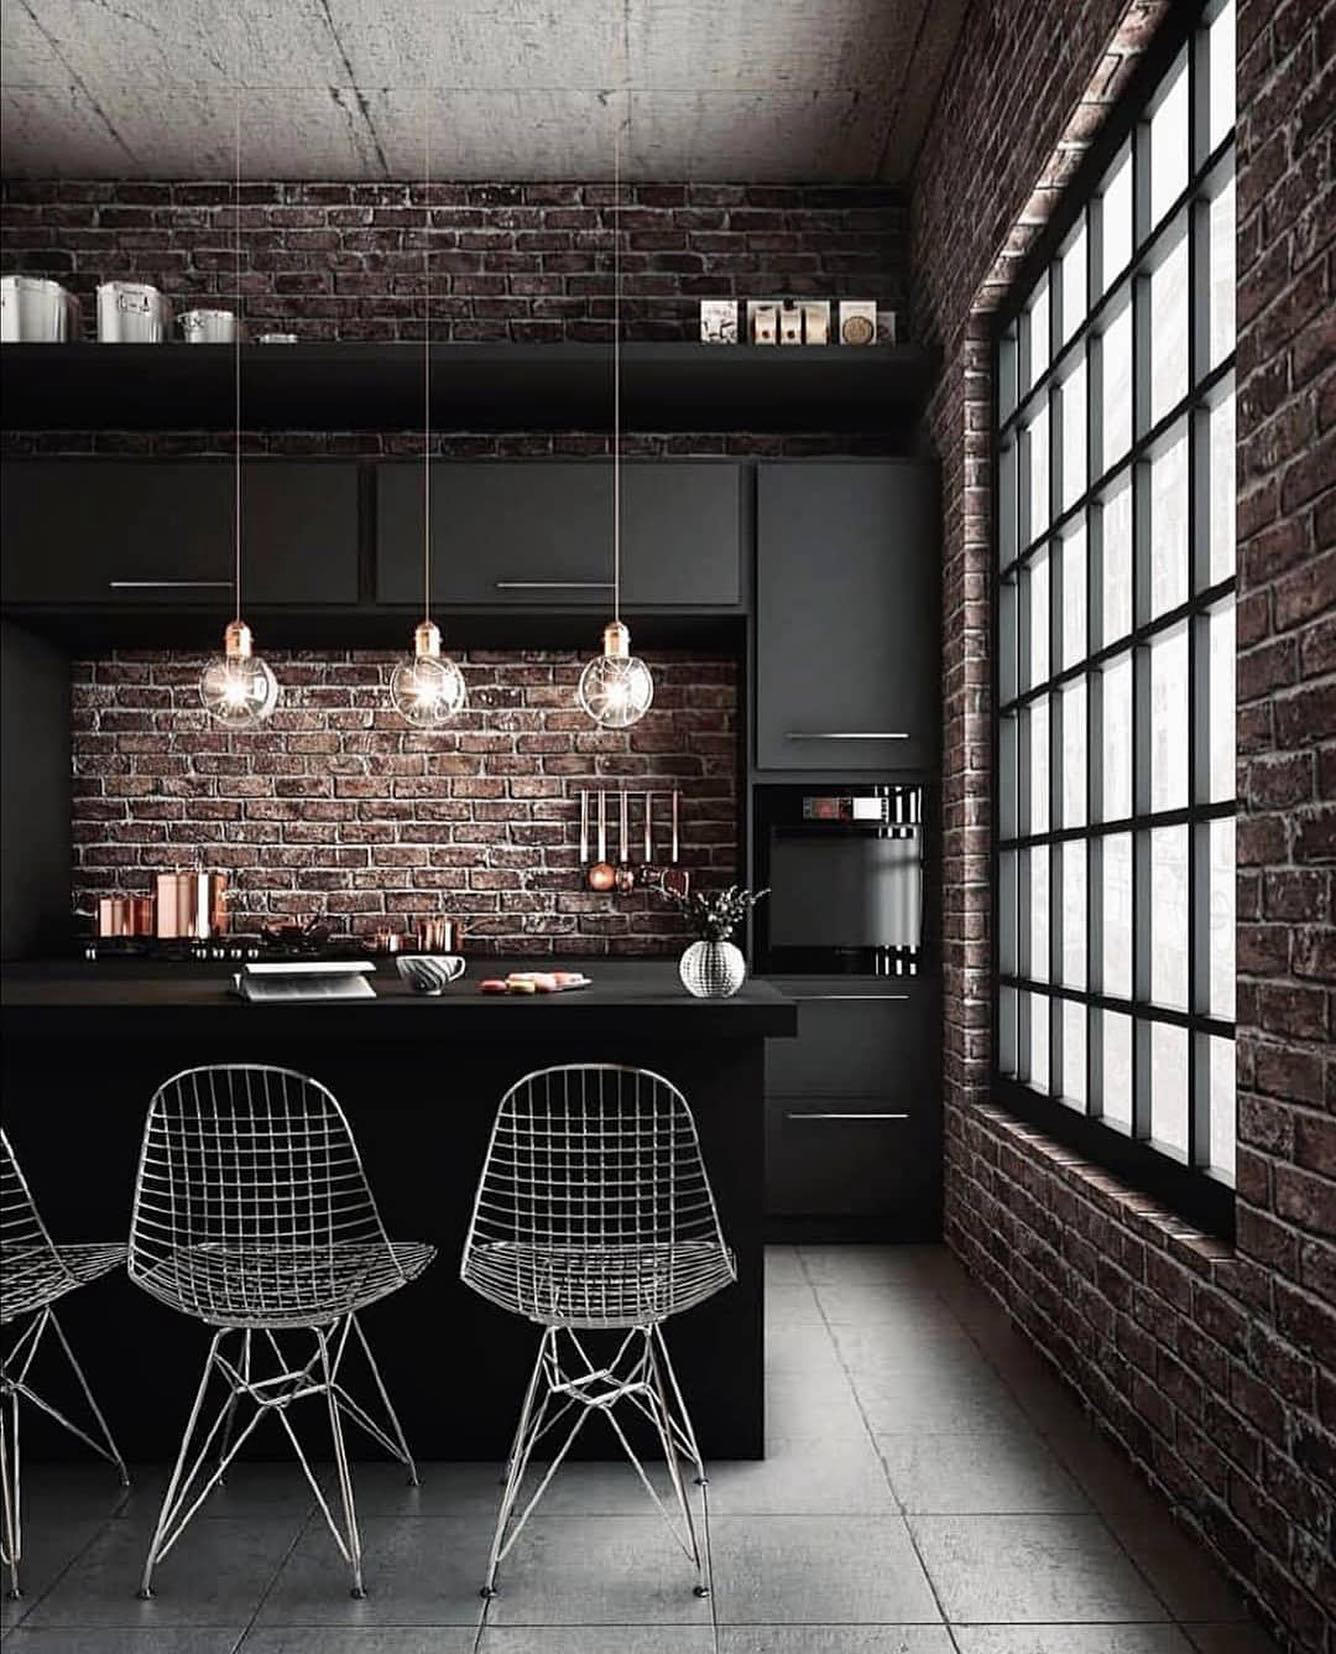 Architecture & Interior Design - Amazing black kitchen with brick wall by #pink_art_designGet Inspir